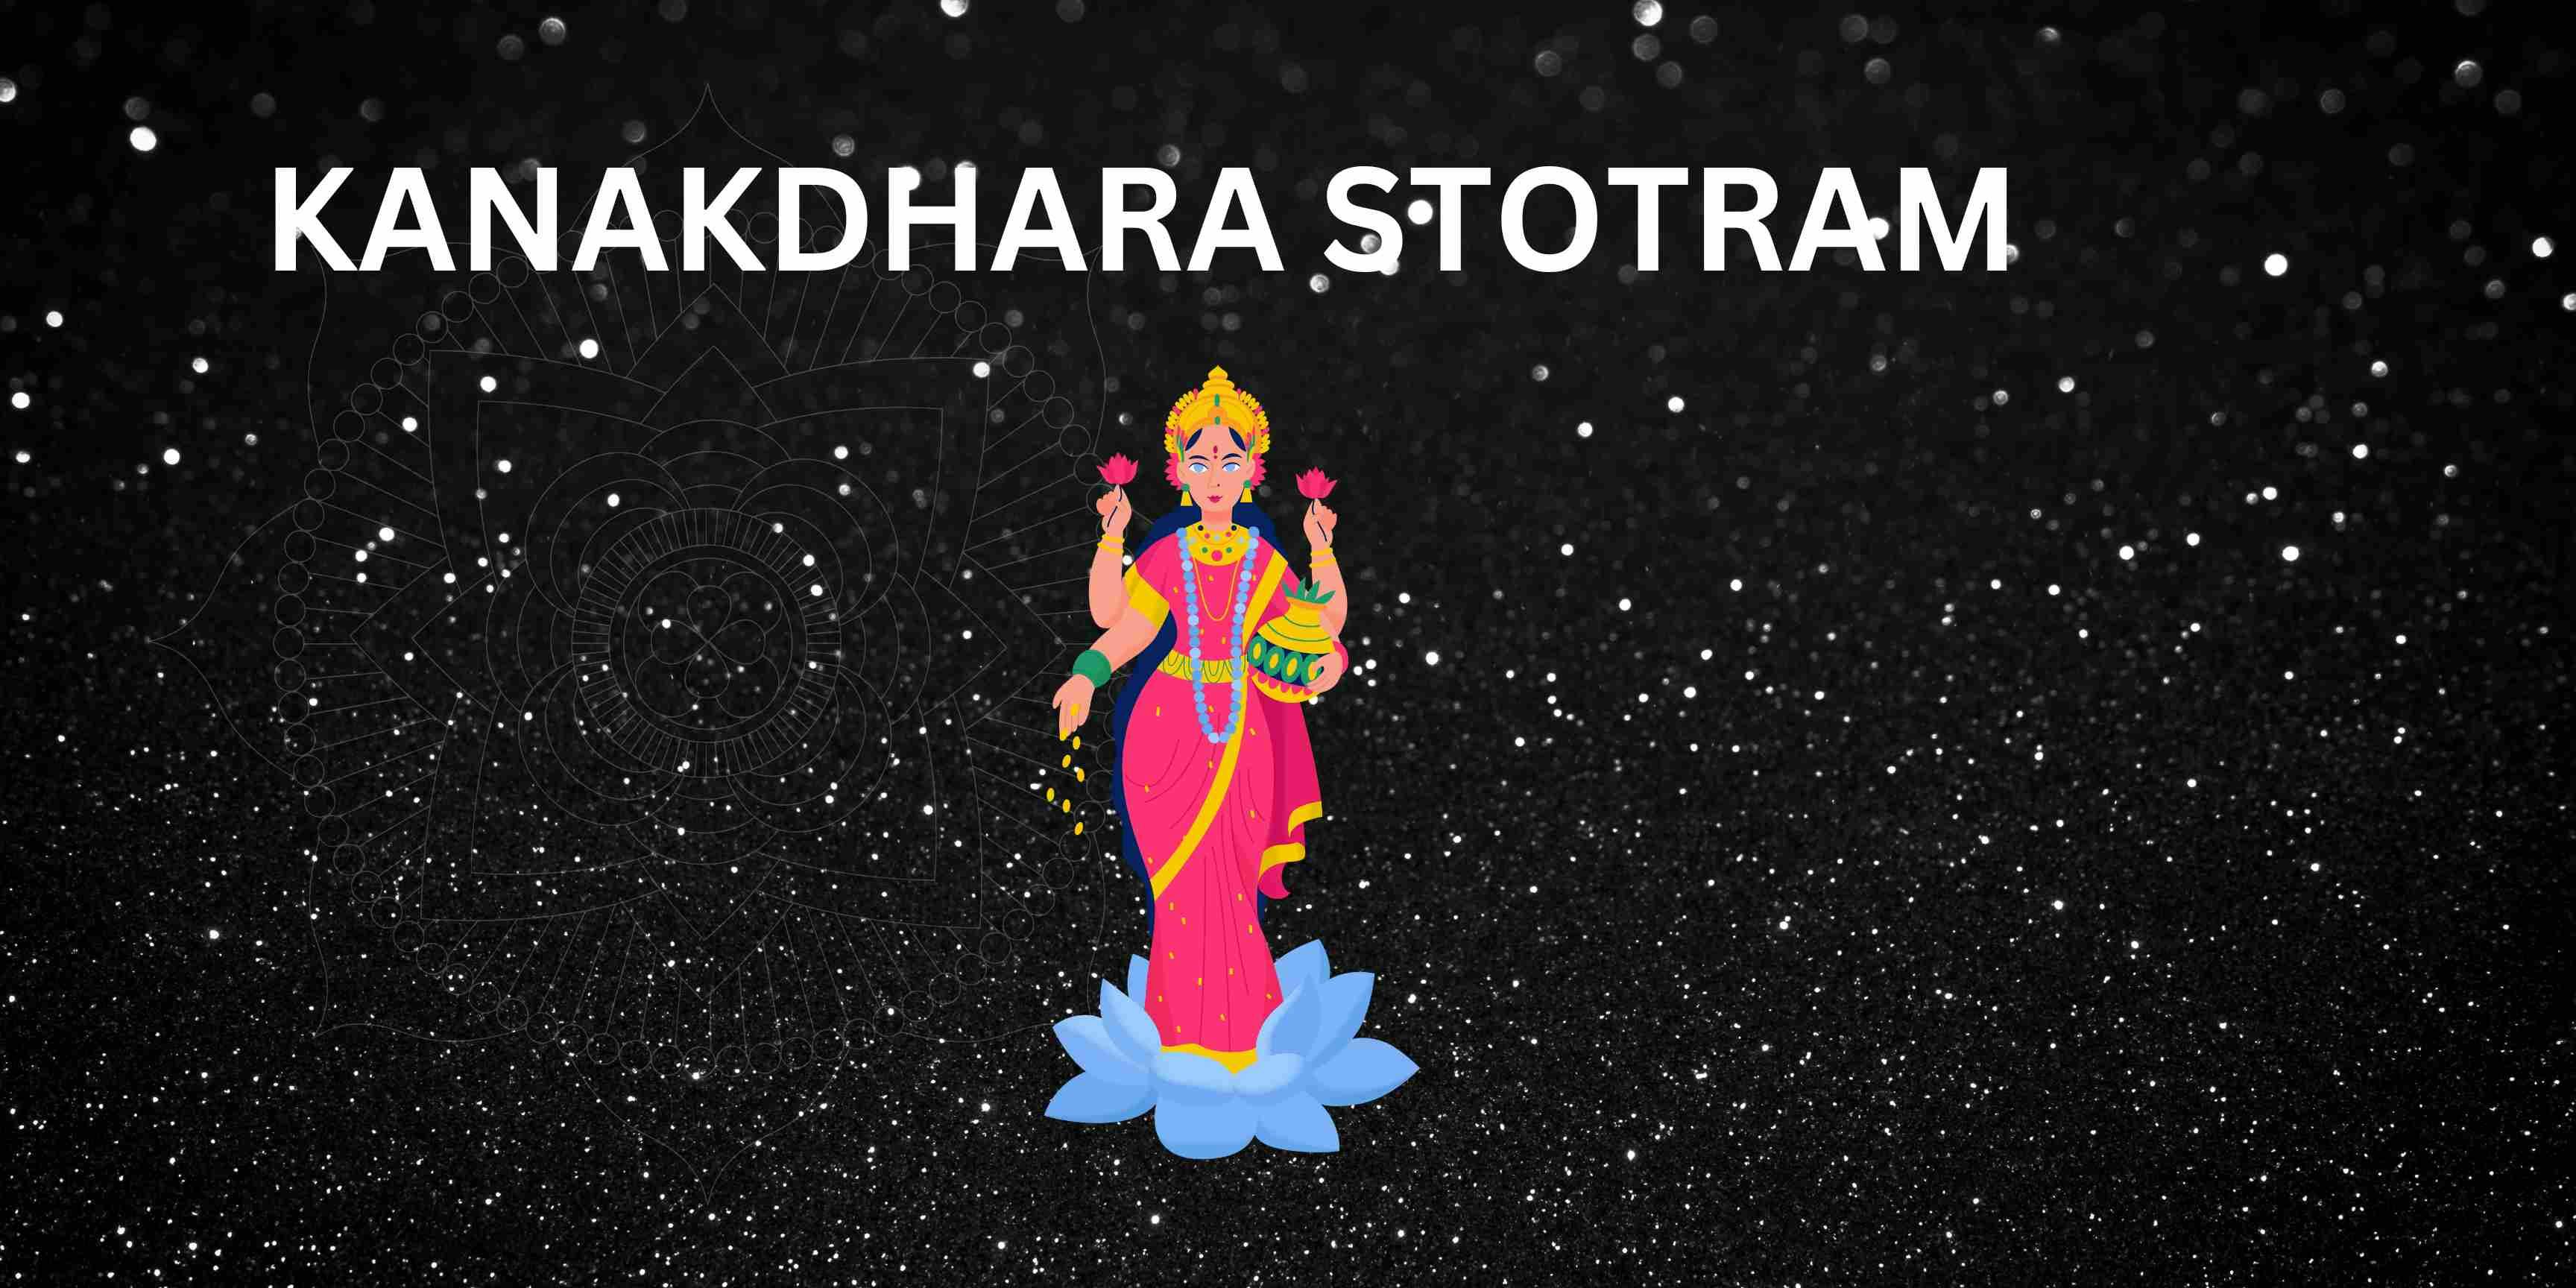 Kanakdhara Stotram by Shri Adishankaracharya